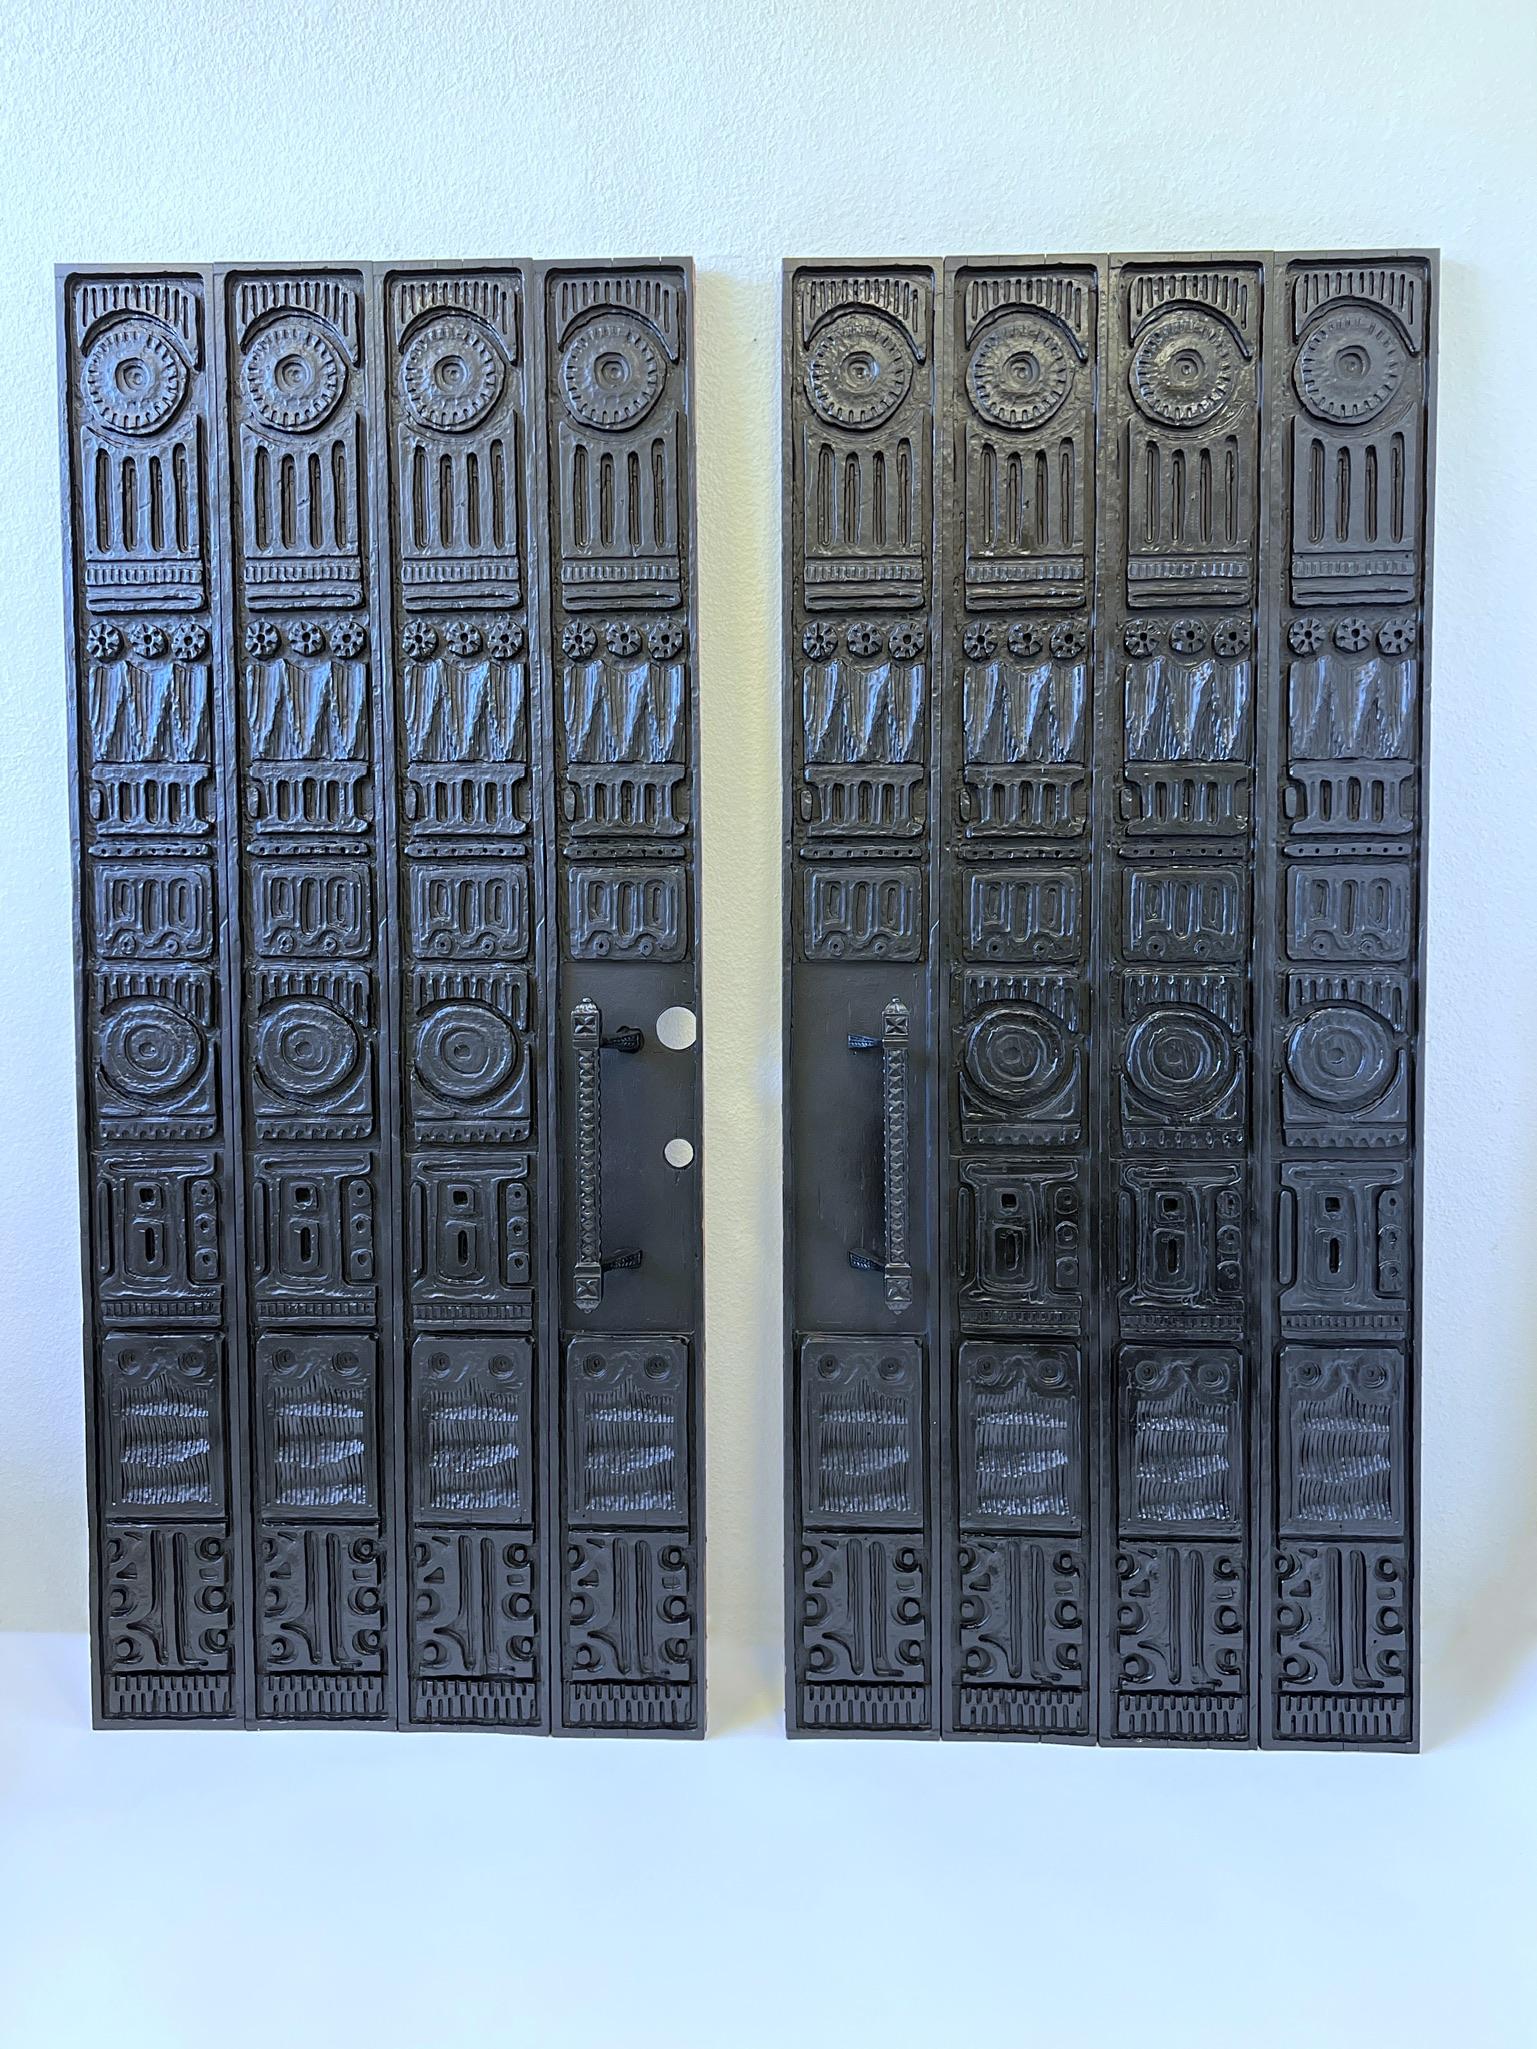 Unglaubliche geschnitzte Rotholzplatten für Eingangstüren aus den 1960er Jahren von Evelyn und Jerome Ackerman. Entworfen, um über eine doppelte Eingangstür zu passen. Vier Paneele mit Rahmen für jede Tür. Die Türgriffe sind aus pulverbeschichtetem